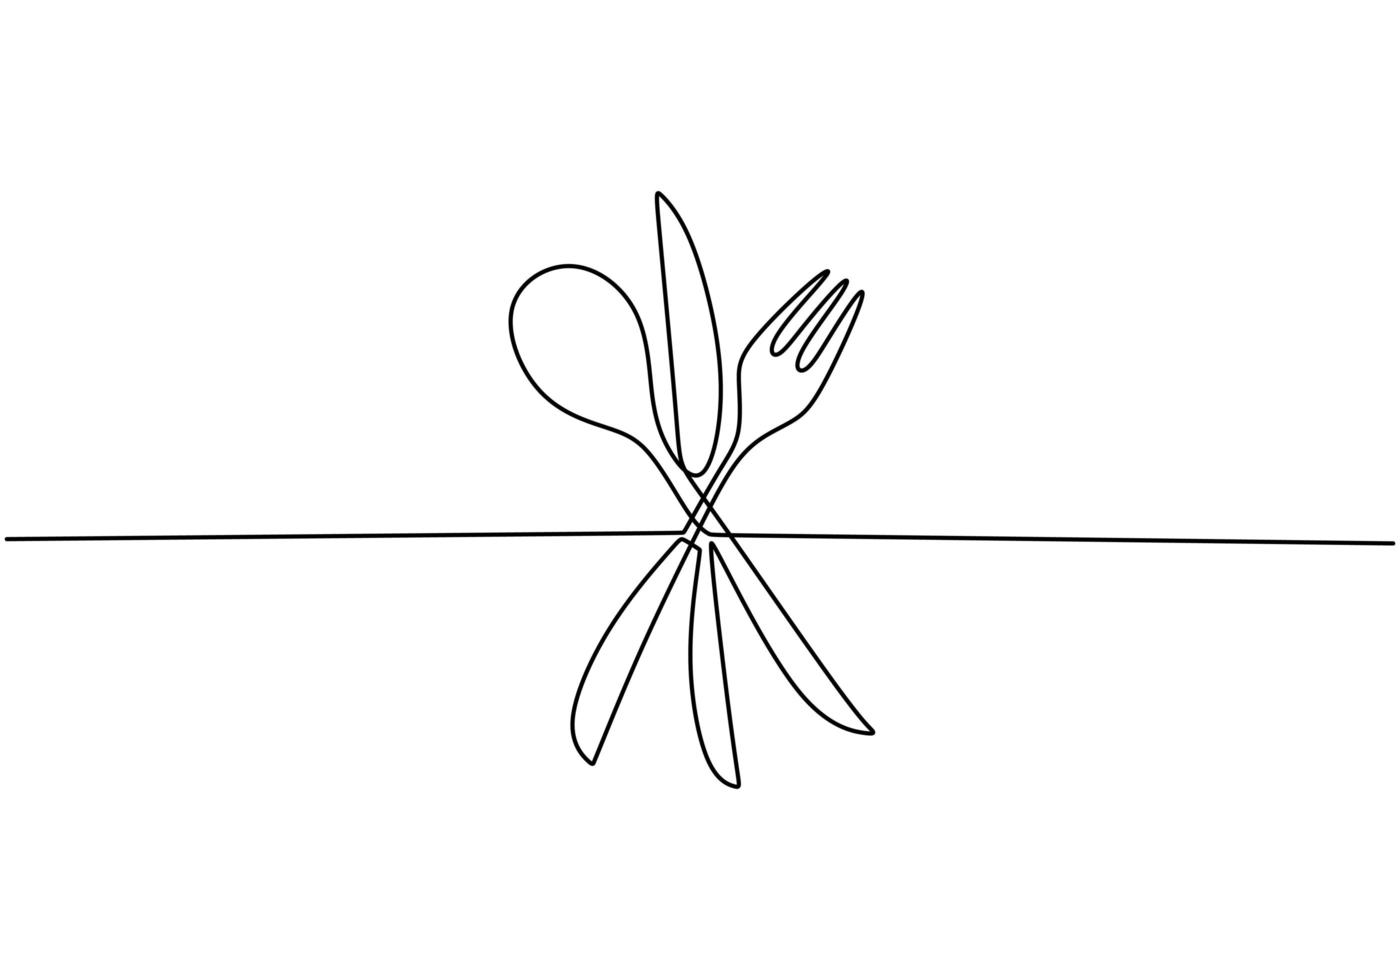 kontinuierliche einzeilige Zeichnung Lebensmittelzeichen, Vektor von Löffel, Gabel und Messer. Minimalismusentwurf mit der Einfachheit Hand gezeichnet lokalisiert auf weißem Hintergrund, Minimalismuskonturhand gezeichnet.